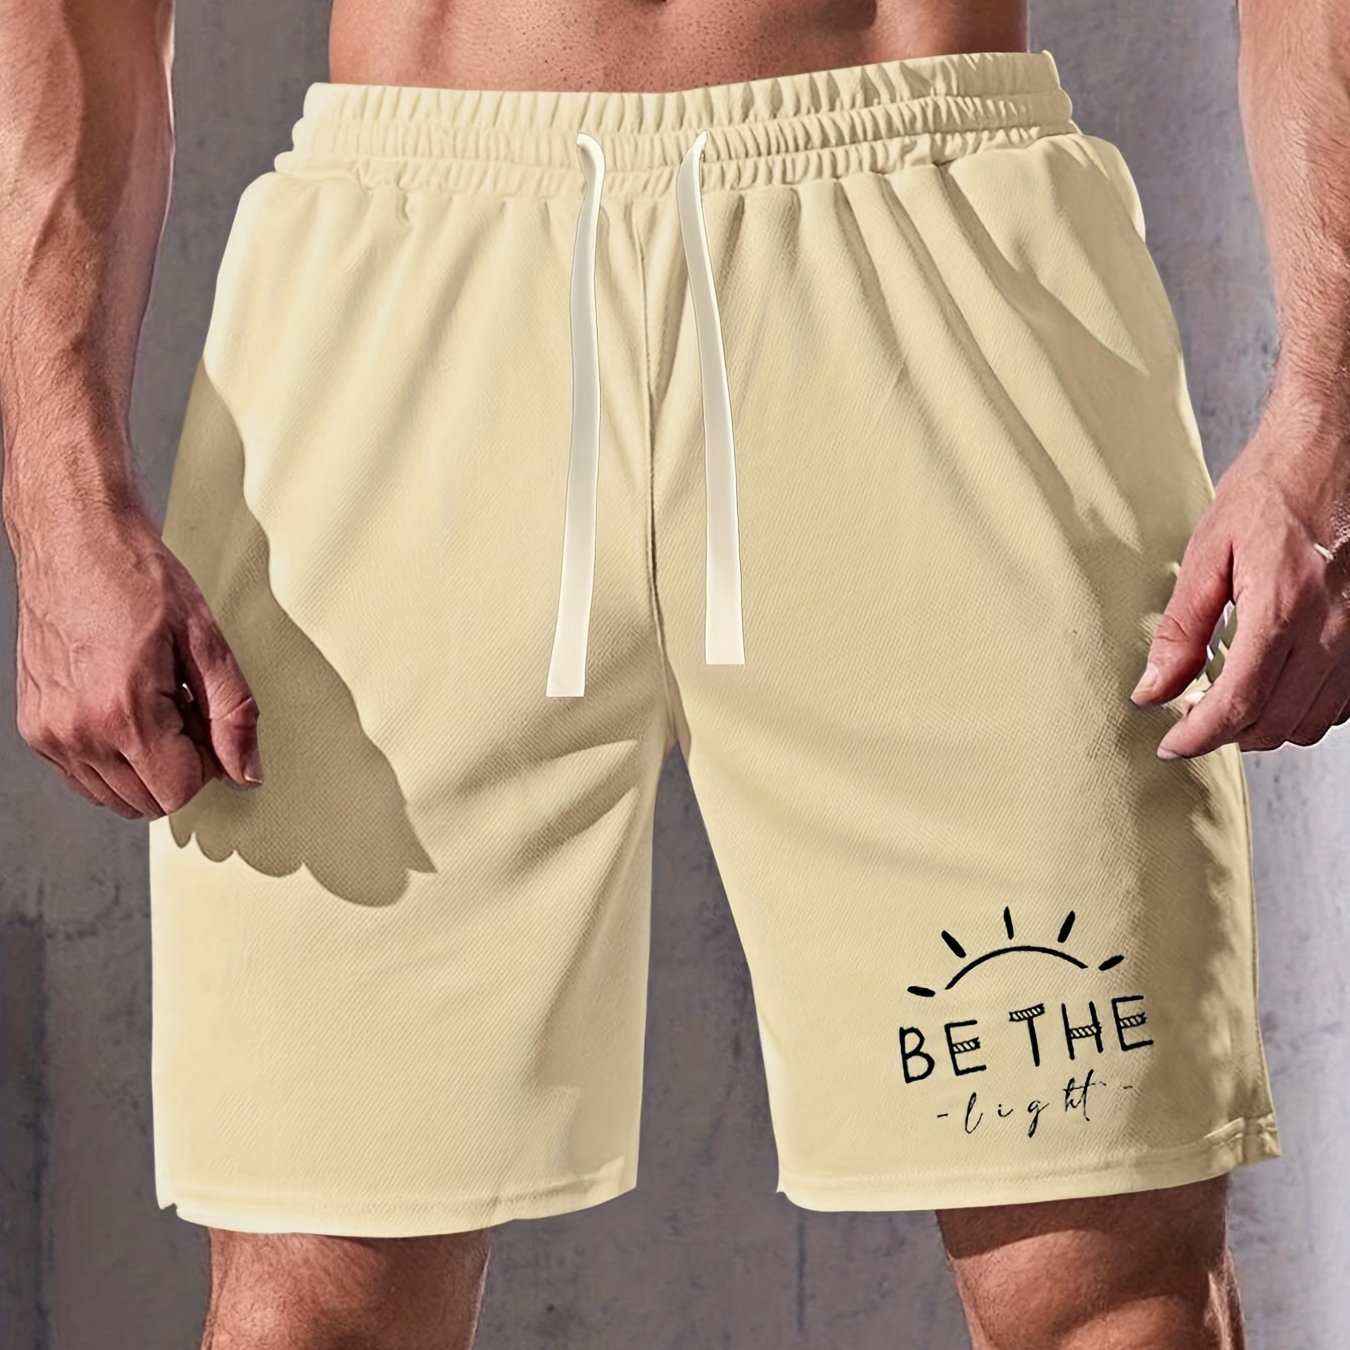 BE THE Light Men's Christian Shorts claimedbygoddesigns